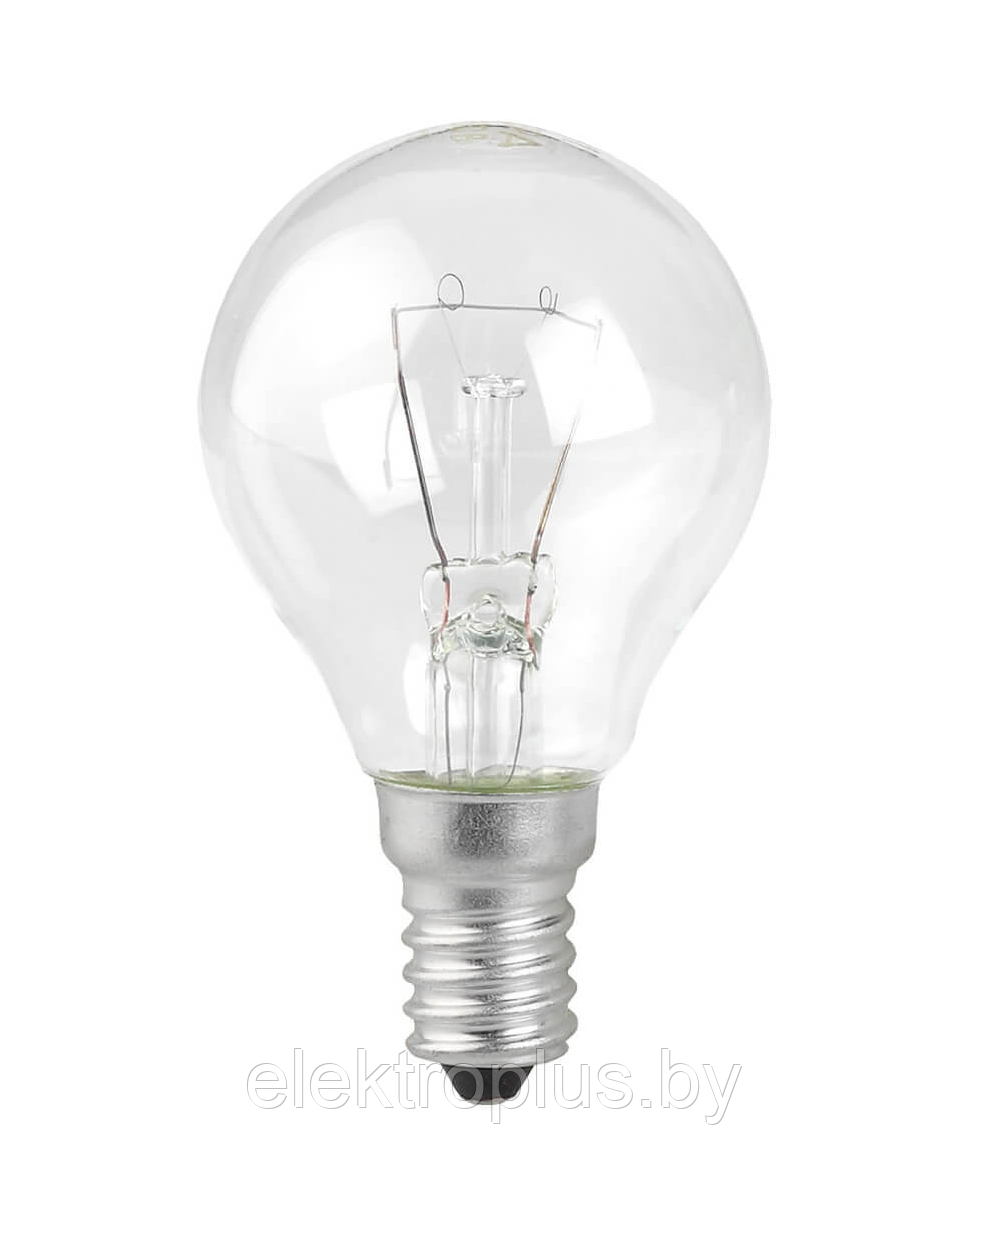 Лампа накаливания общего назначения 60 Вт цоколь E14